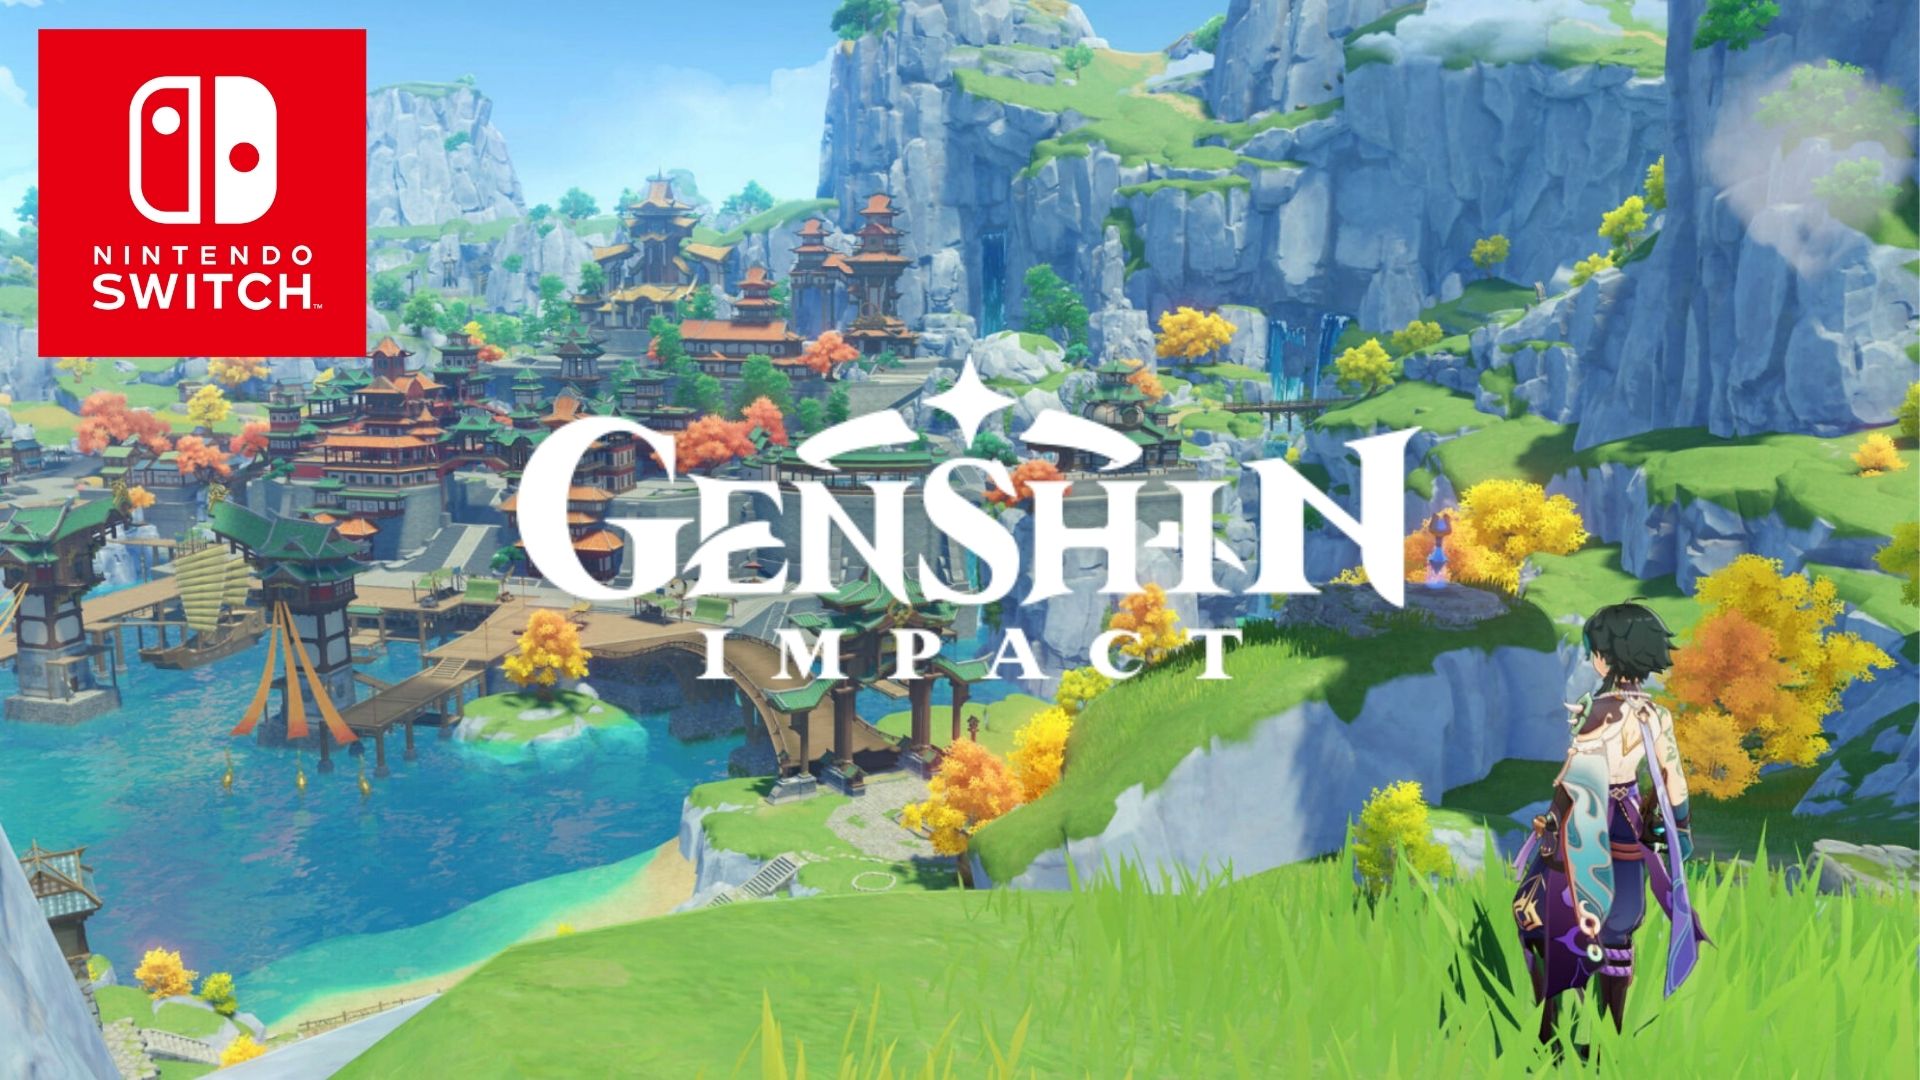 Imagem para "A versão Switch ainda está em produção", diz estúdio de Genshin Impact